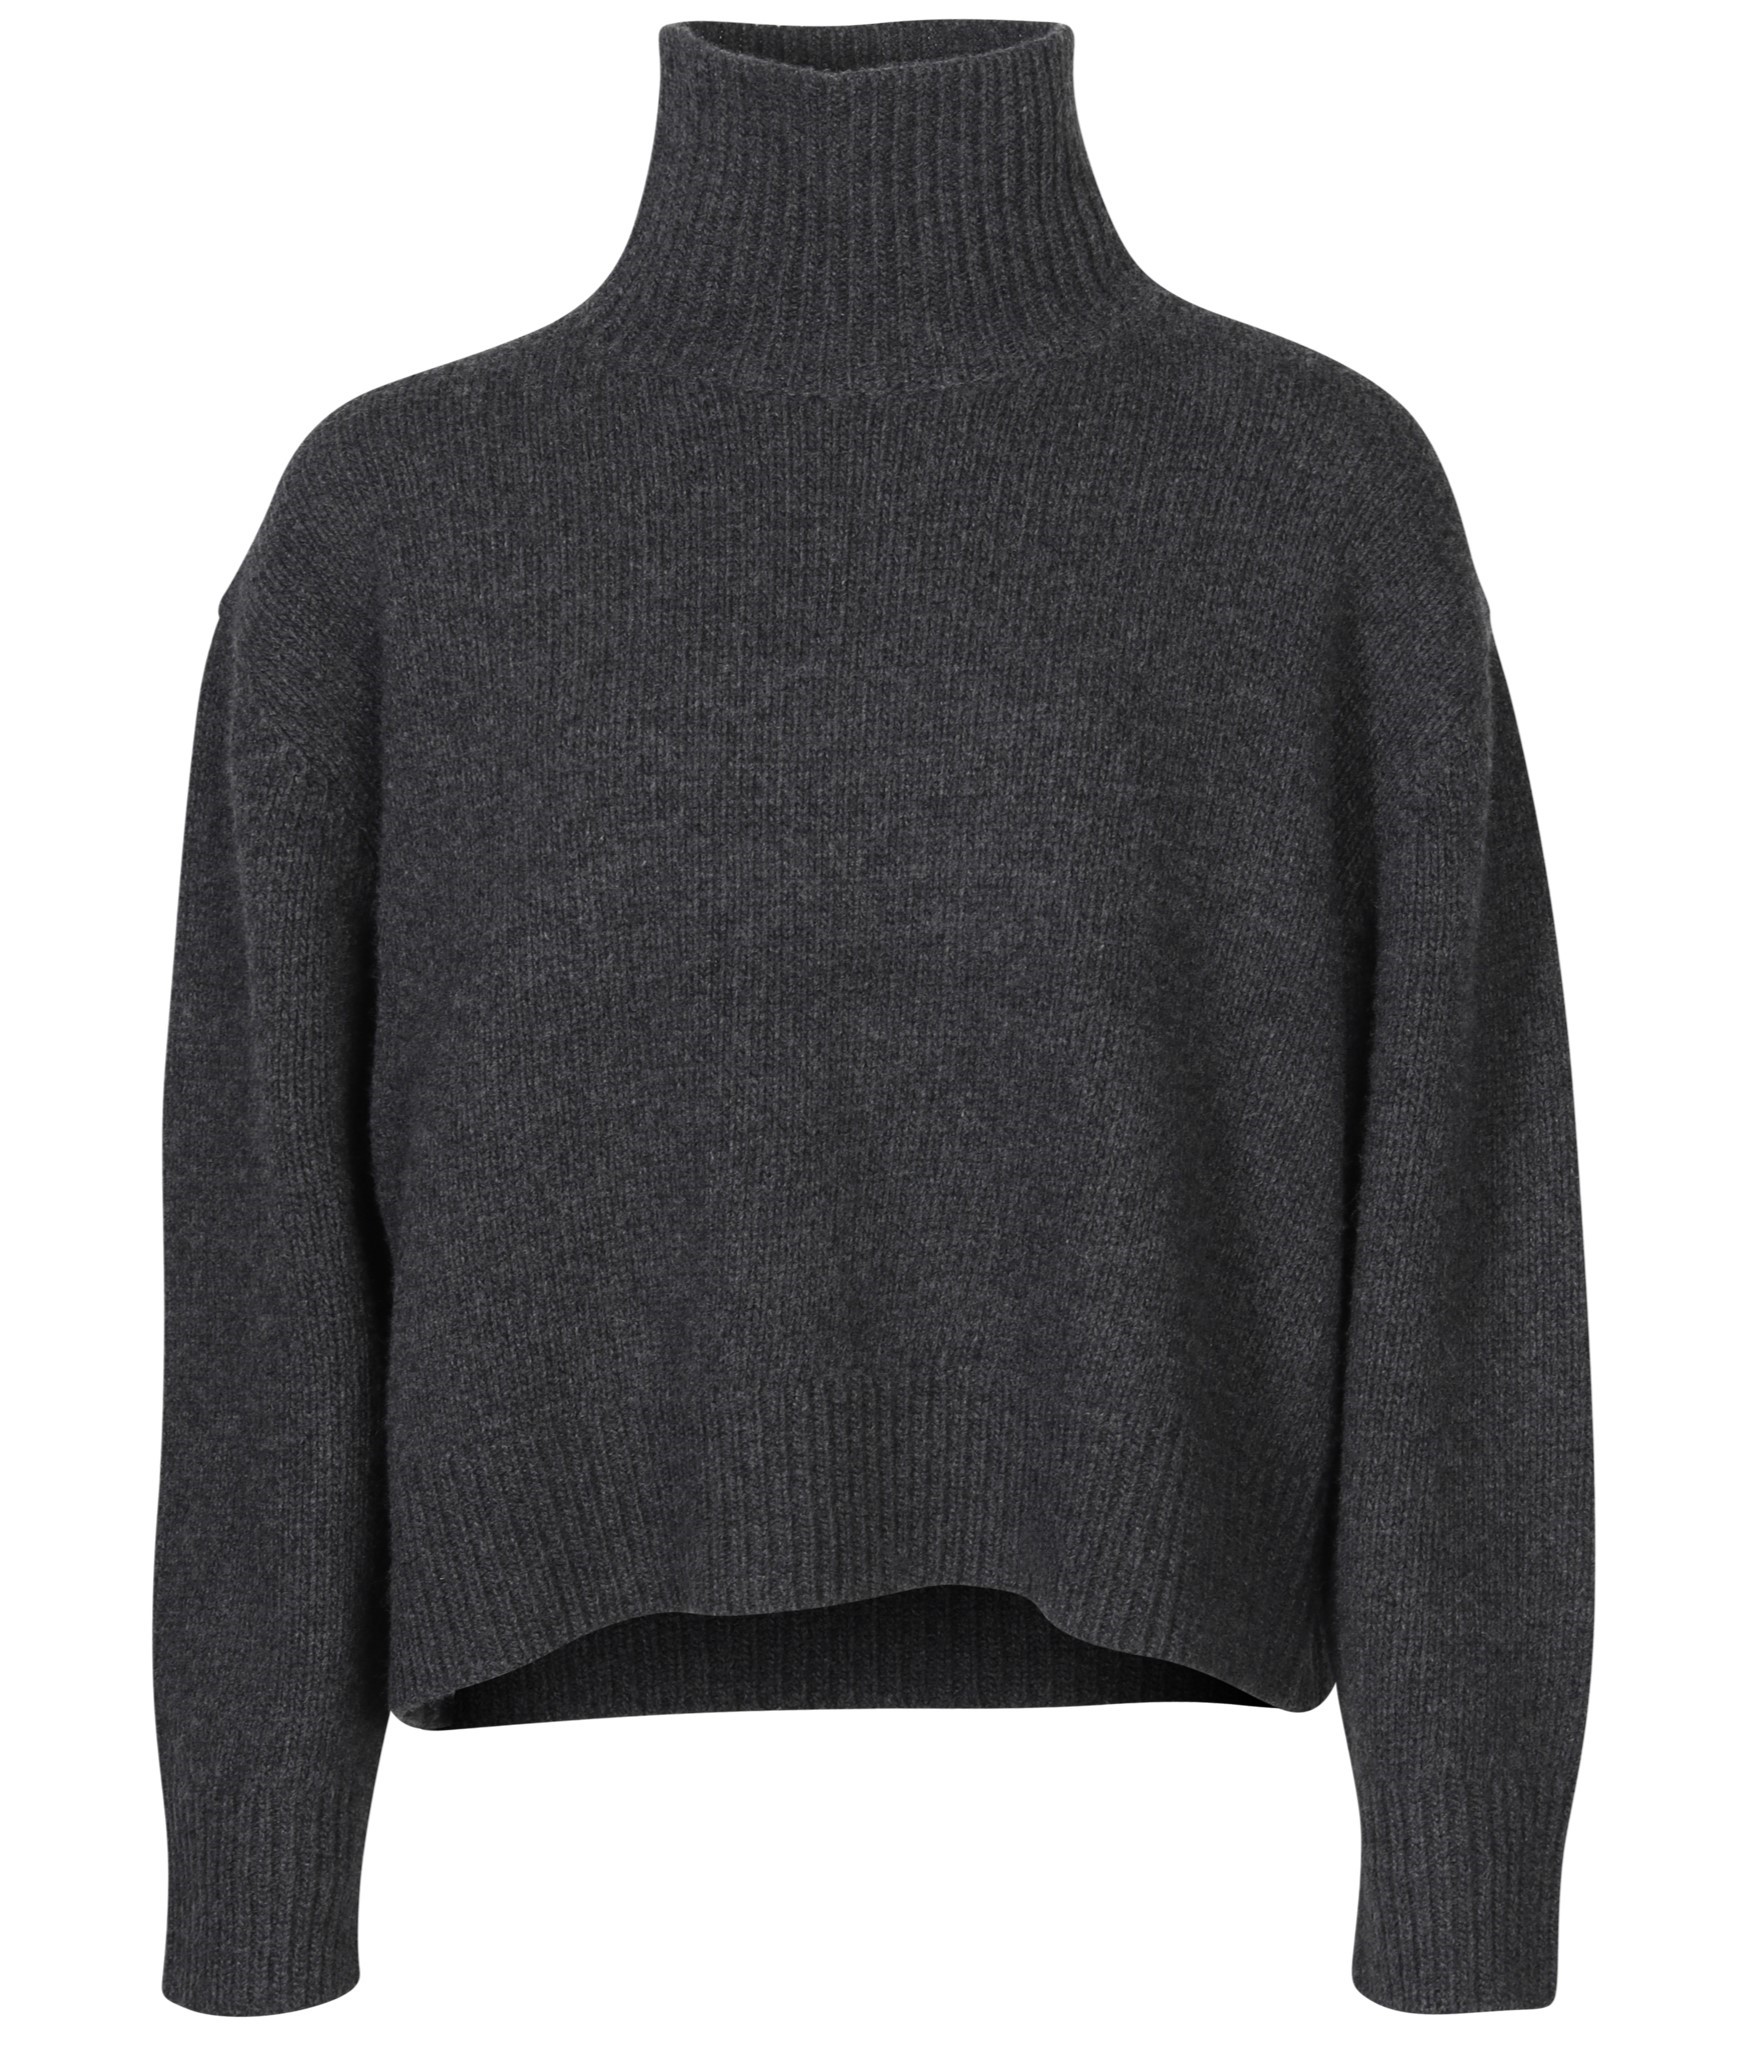 NILI LOTAN Omaira Knit Turtleneck Sweater in Dark Charcoal Melange S